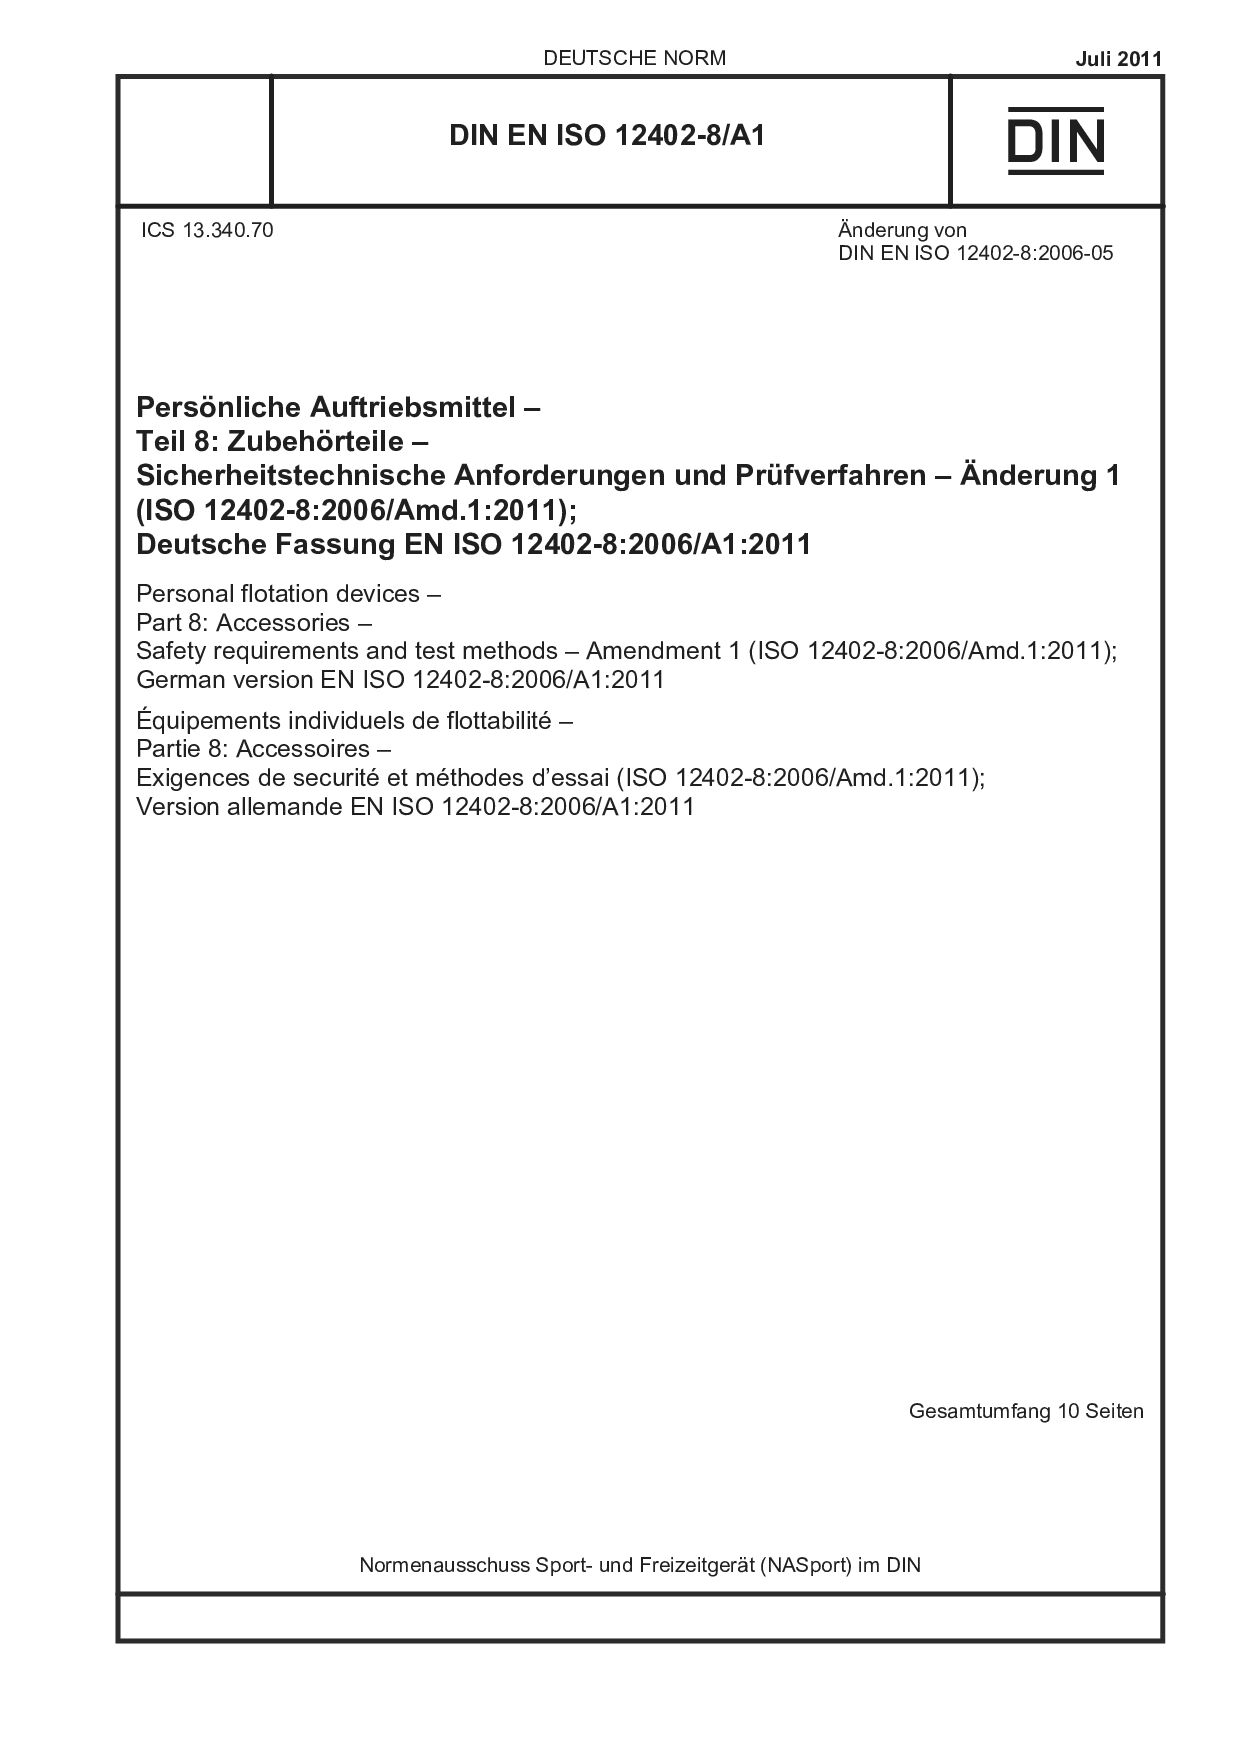 DIN EN ISO 12402-8/A1:2011